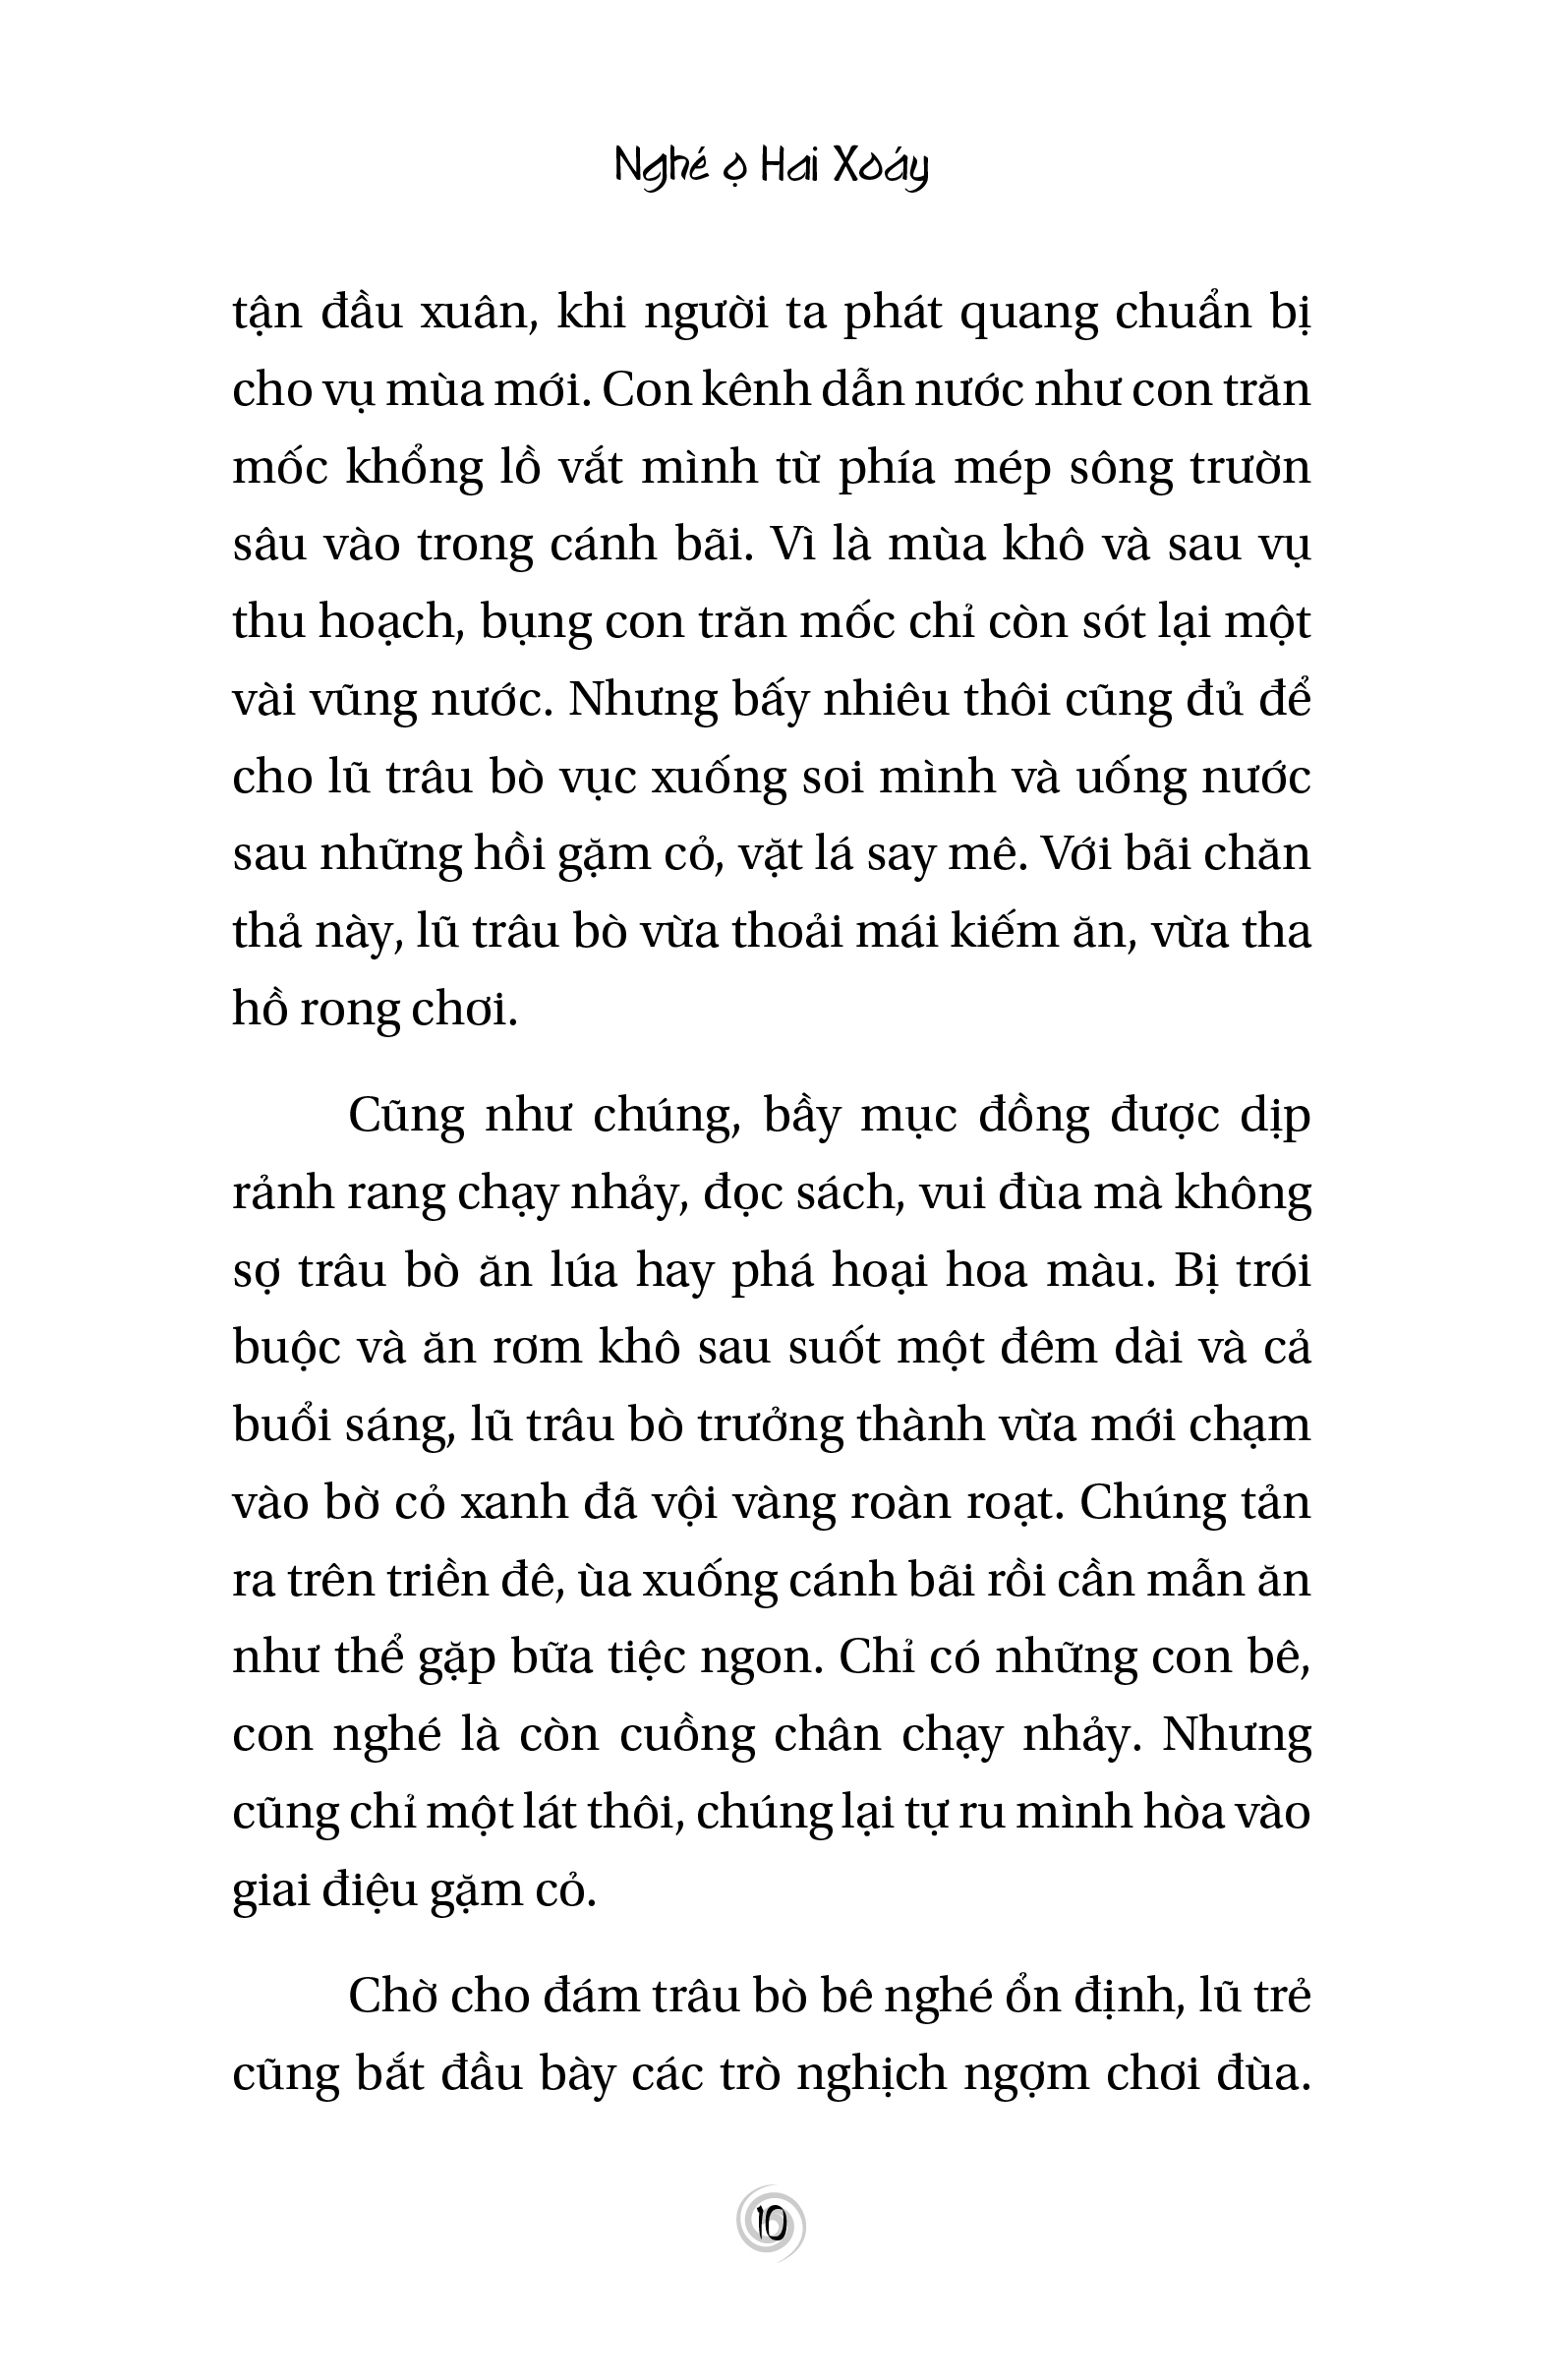 Nghé Ọ Hai Xoáy - Phạm Anh Xuân